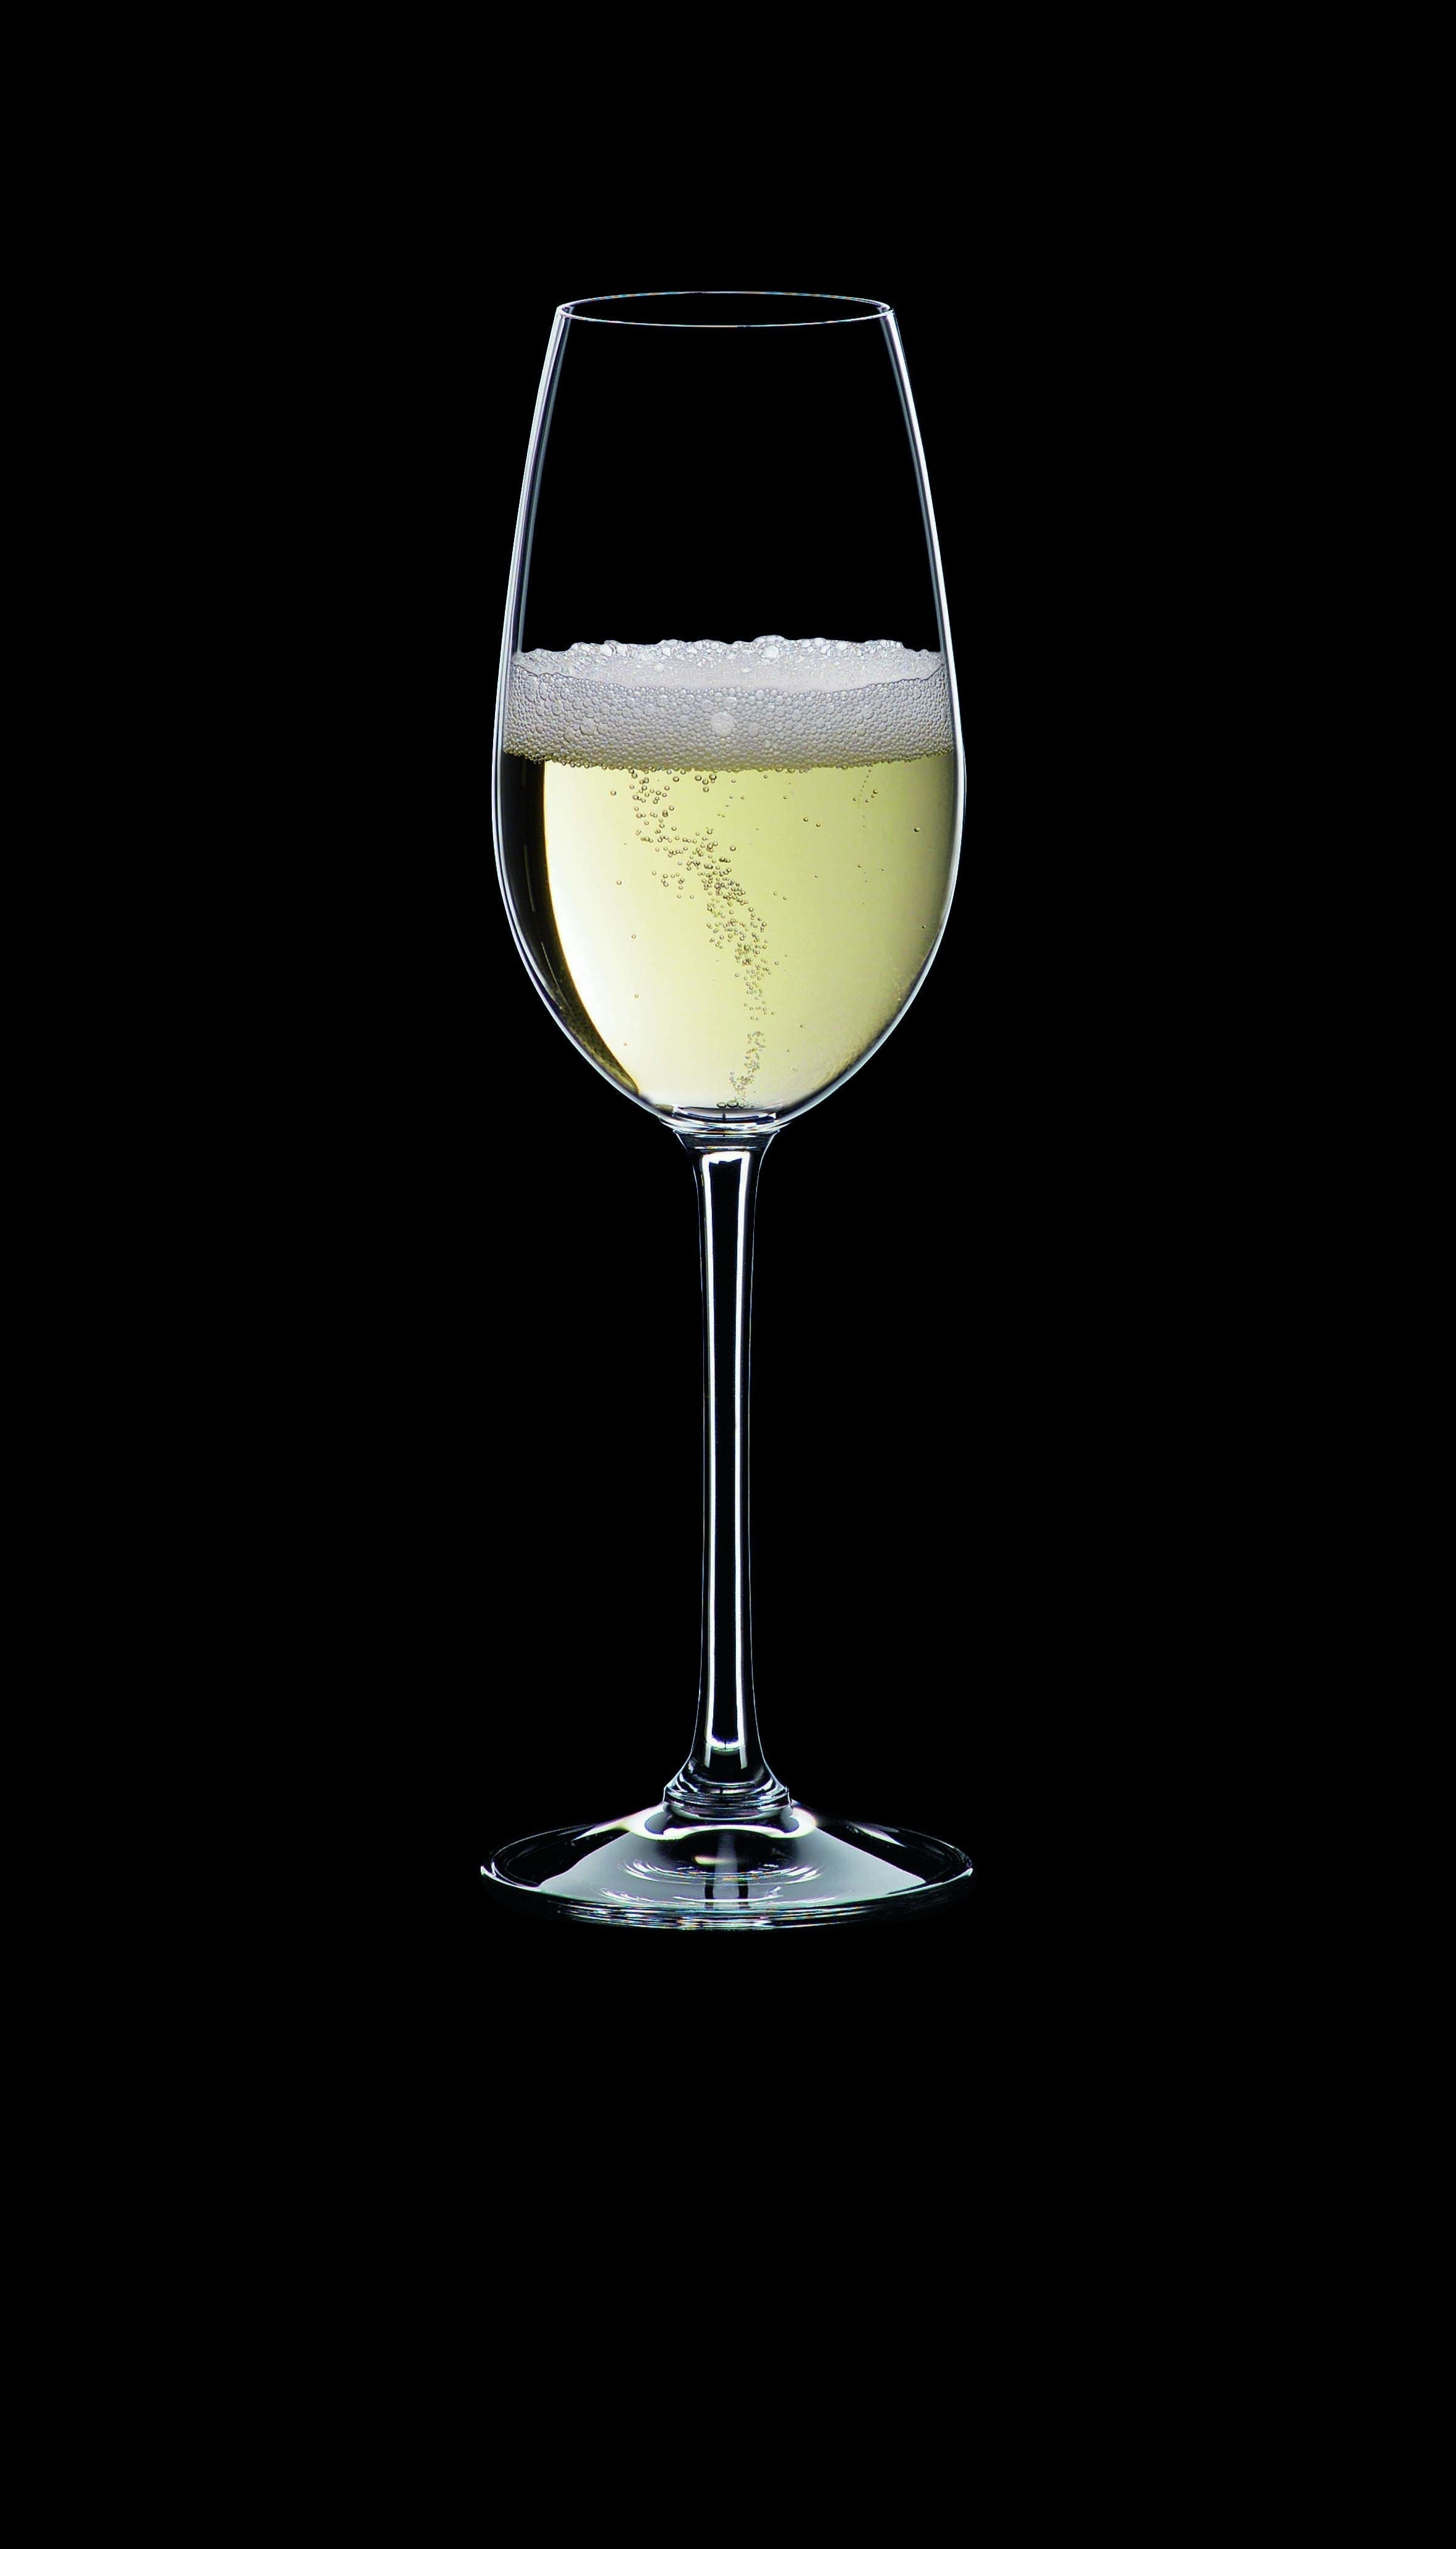 Nachtmann Vi vino champagne glas 260 ml, set van 4